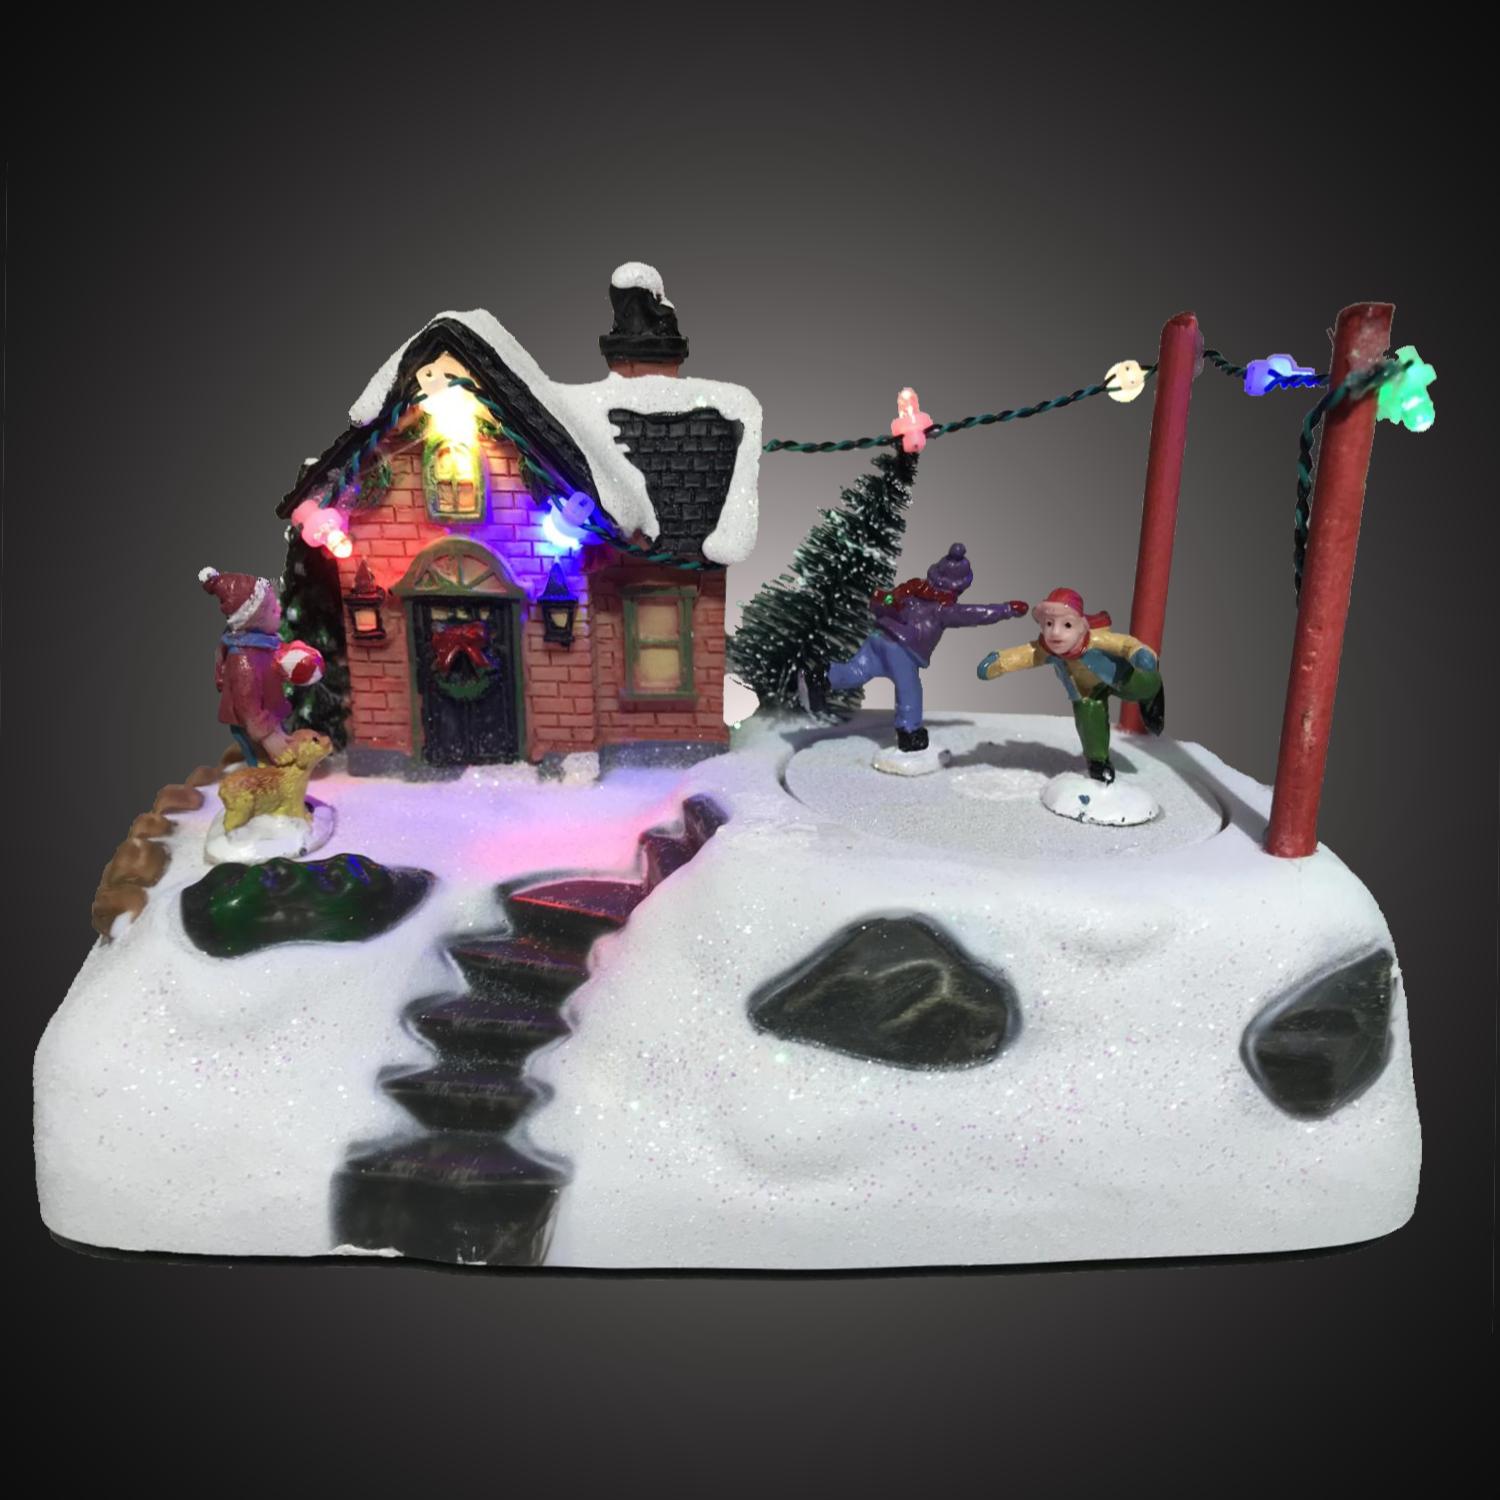 Led kersthuisje - 7 lampjes - 3x AA batterijen - 10 x 18 x 12 centimeter - multicolor